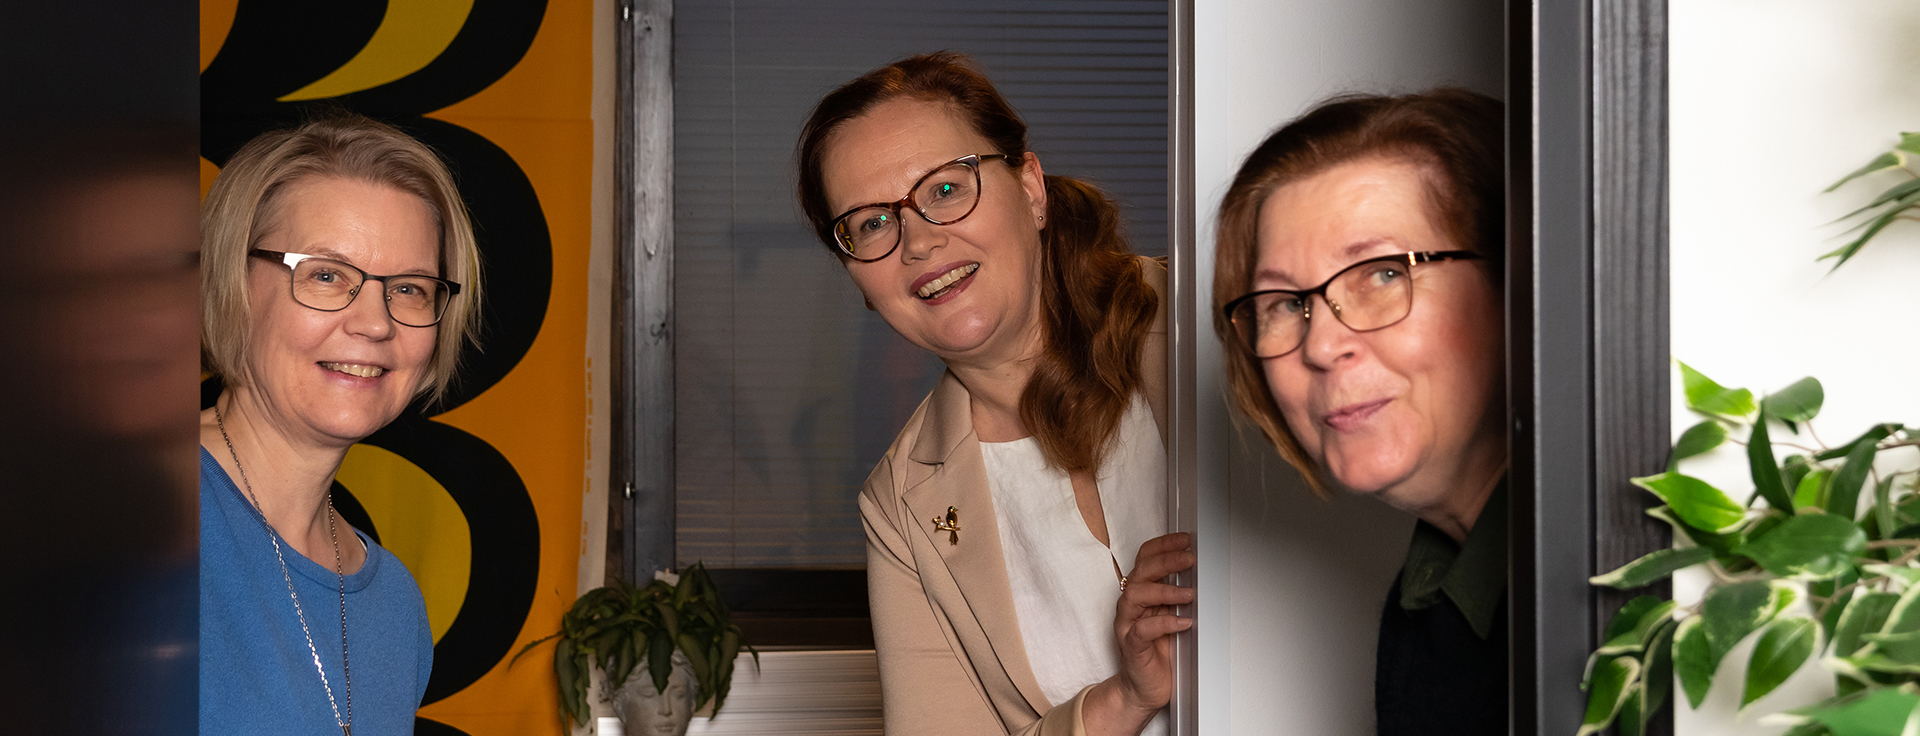 Johanna Laitinen, Katri Luhtalampi & Riitta Mikkonen